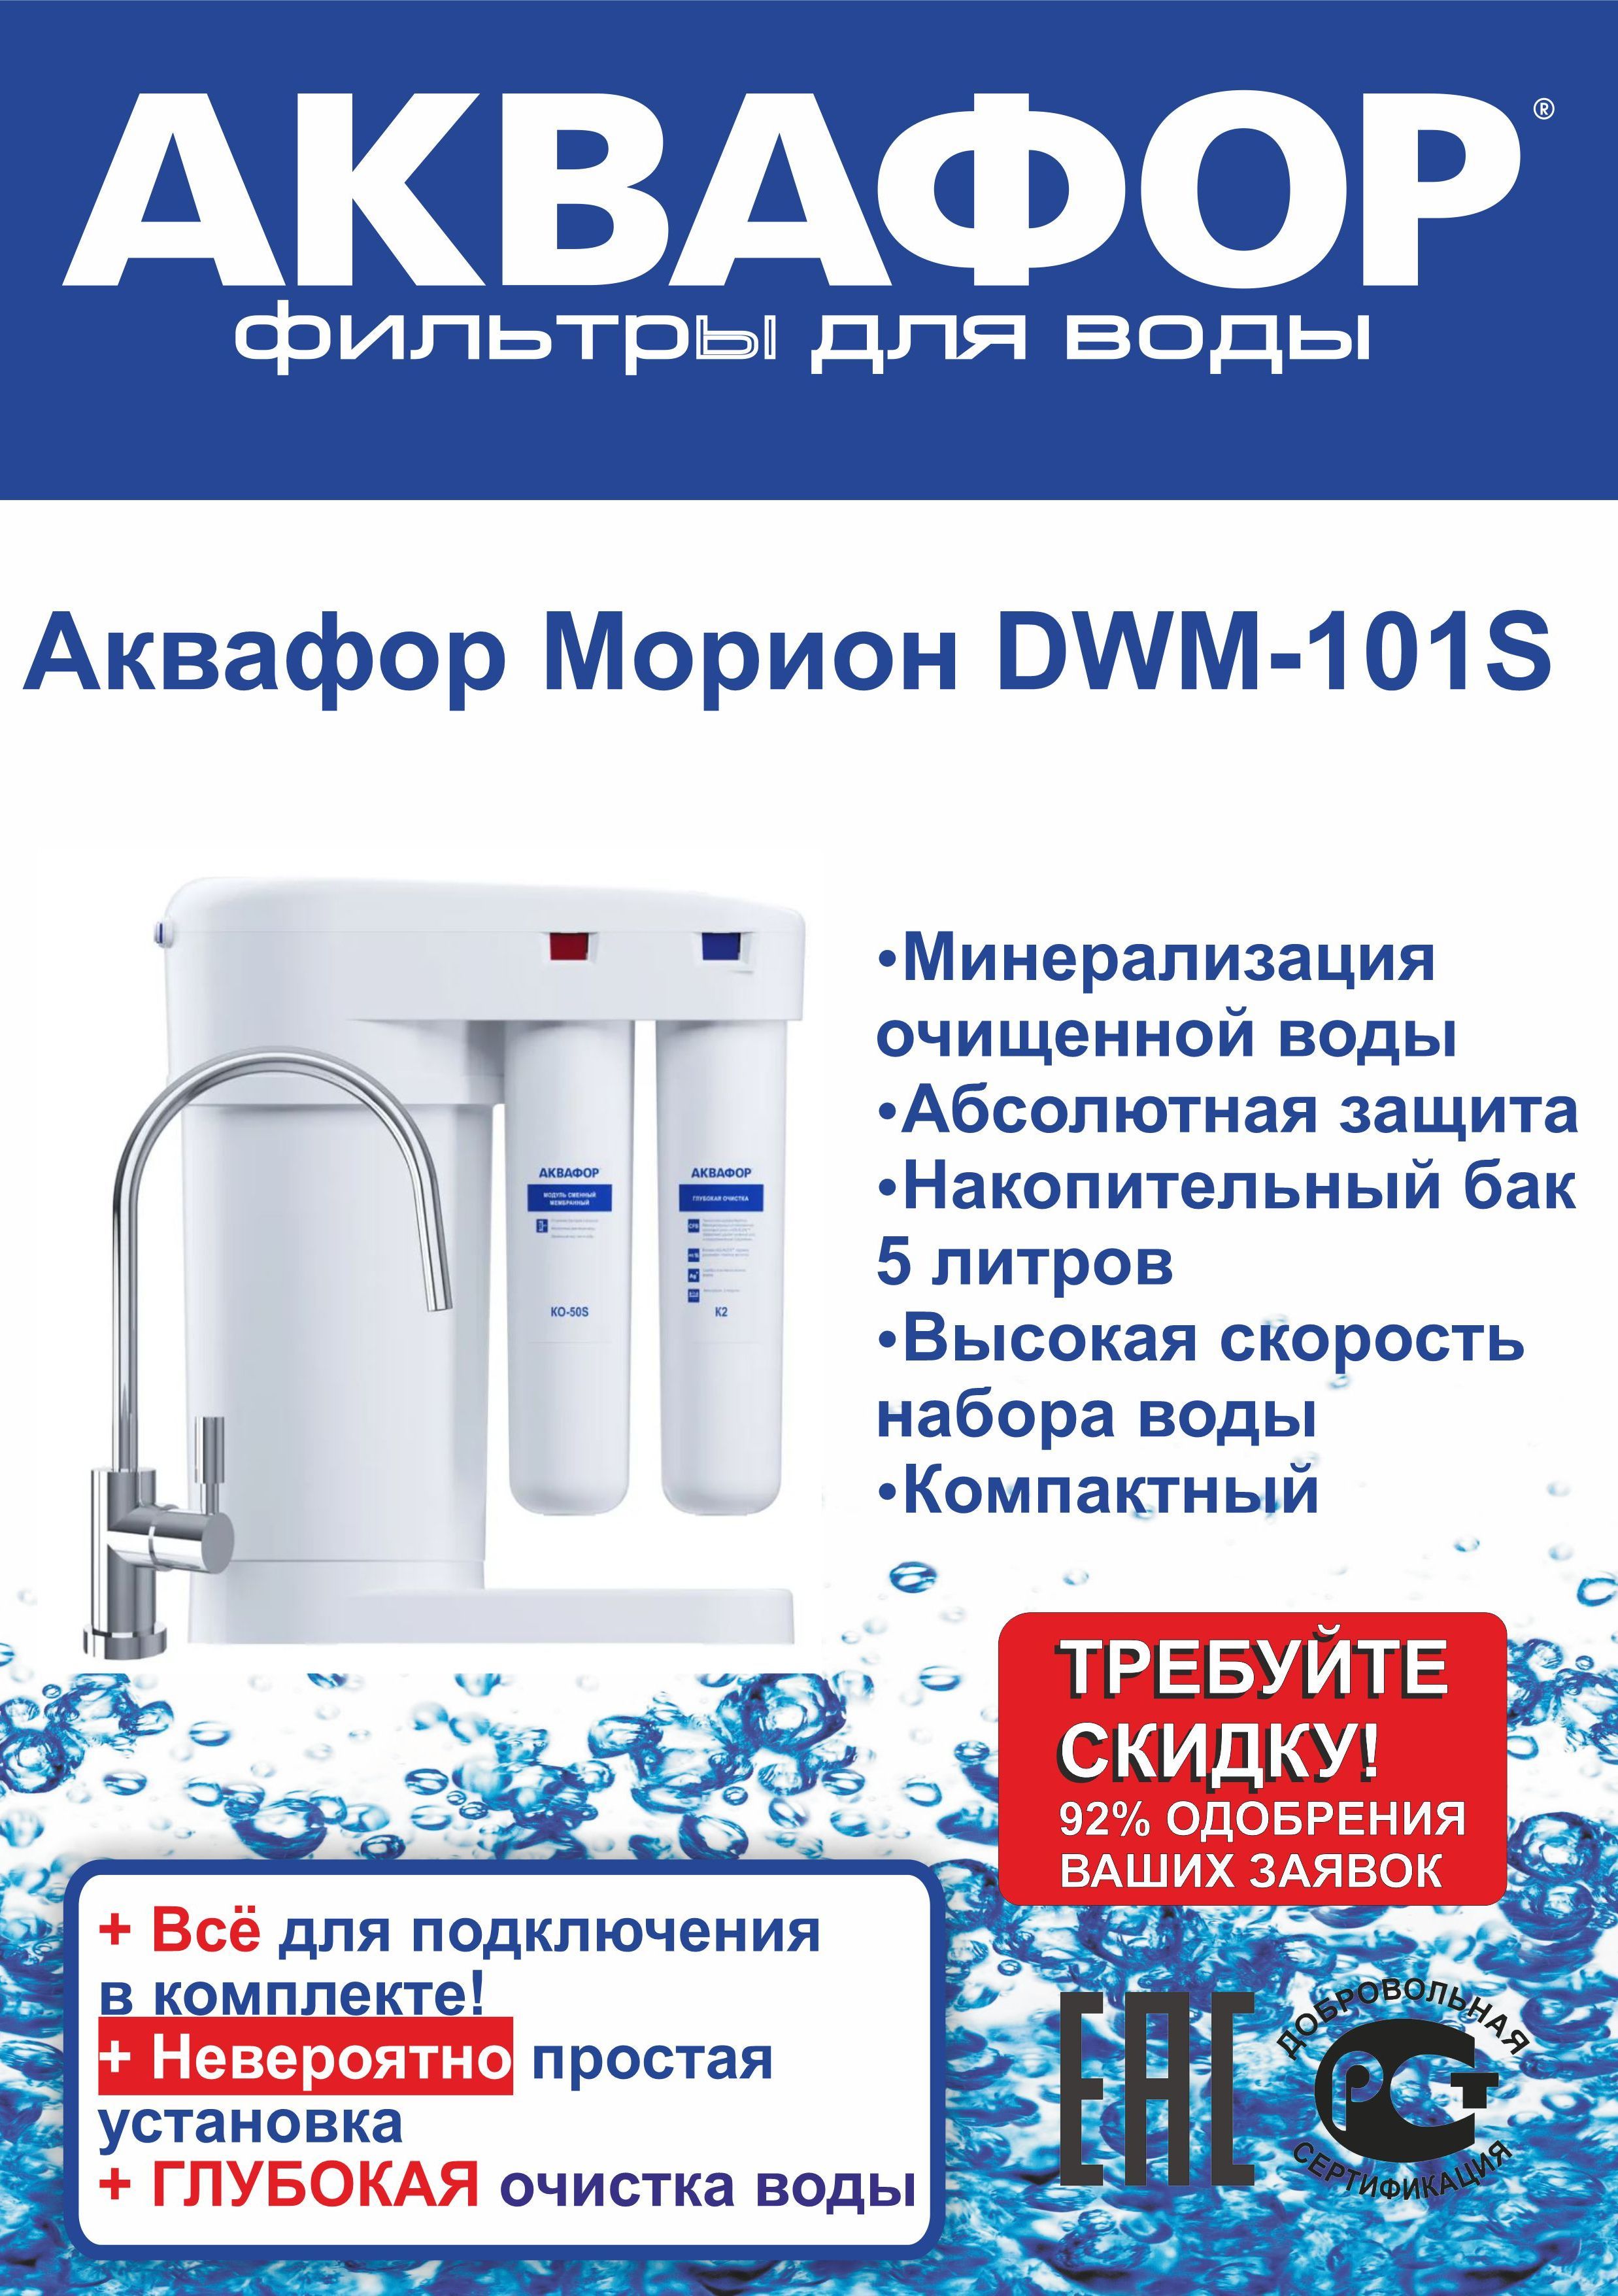 Автомат питьевой воды аквафор dwm 101s. Аквафор DWM-101s Морион. DWM-101s. DWM 101 Морион. Аквафор Марион 101s упаковка.